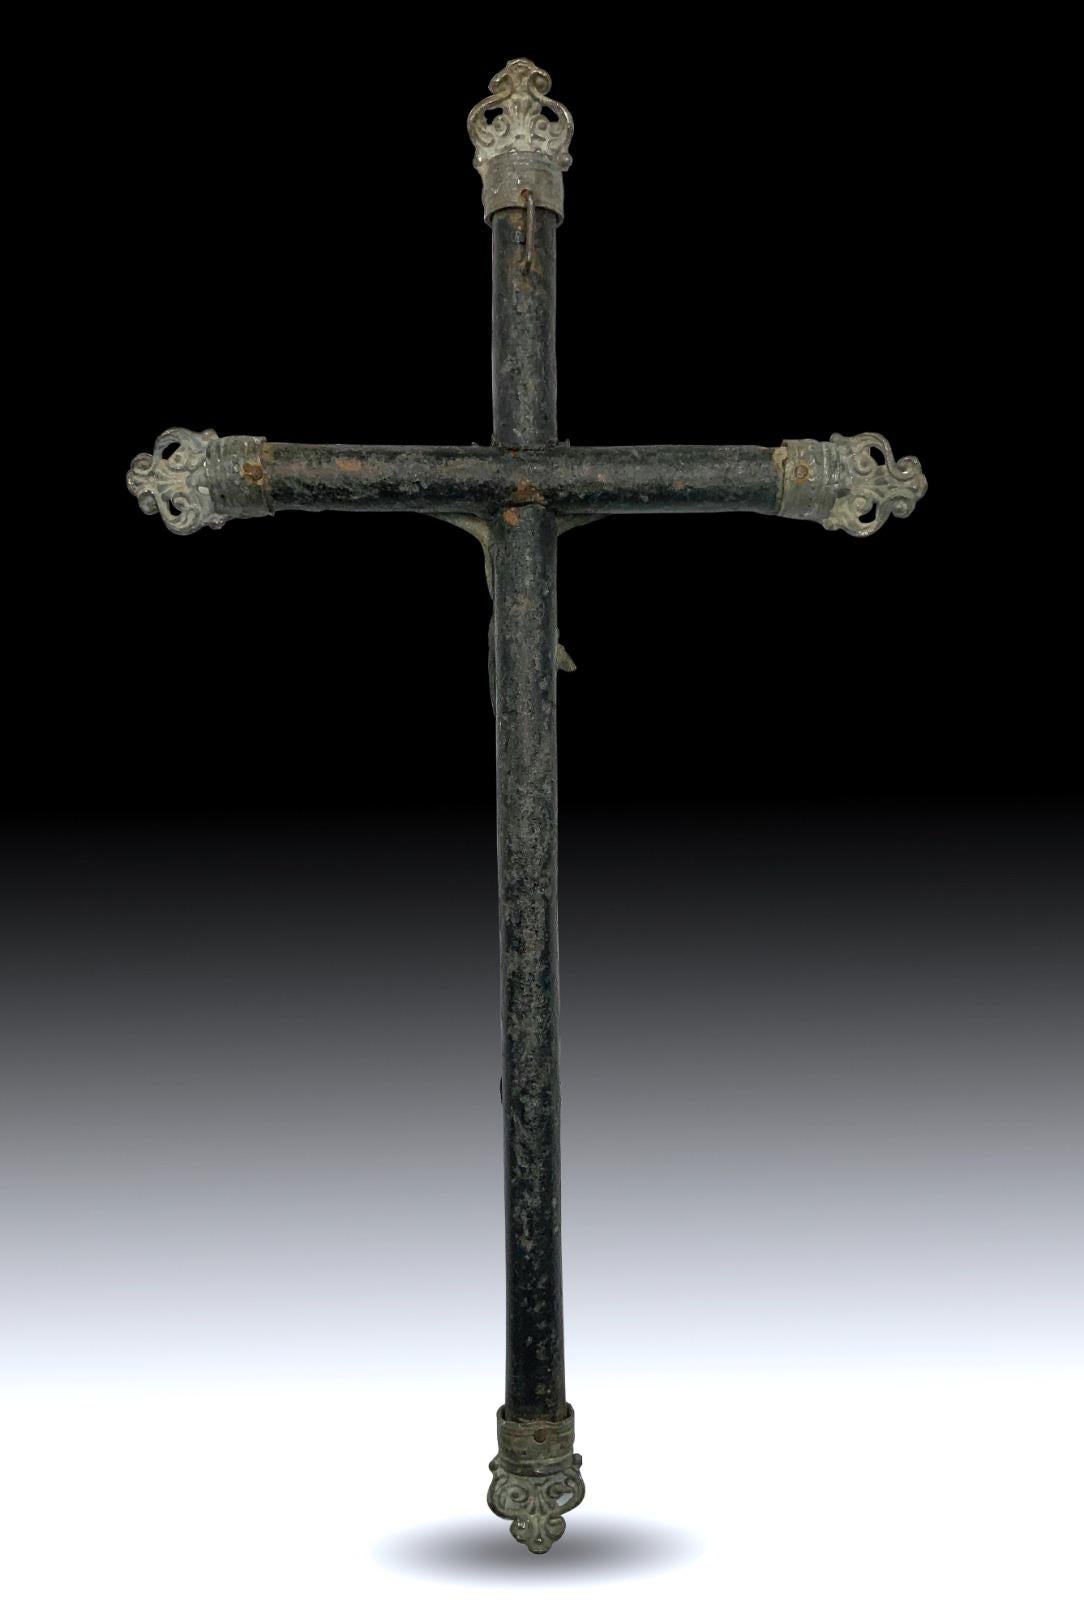 Croix du 19ème siècle.
Belle croix du XIXe siècle en bois d'olivier. Mesures : 23x12 cm. En bon état.
Bon état.